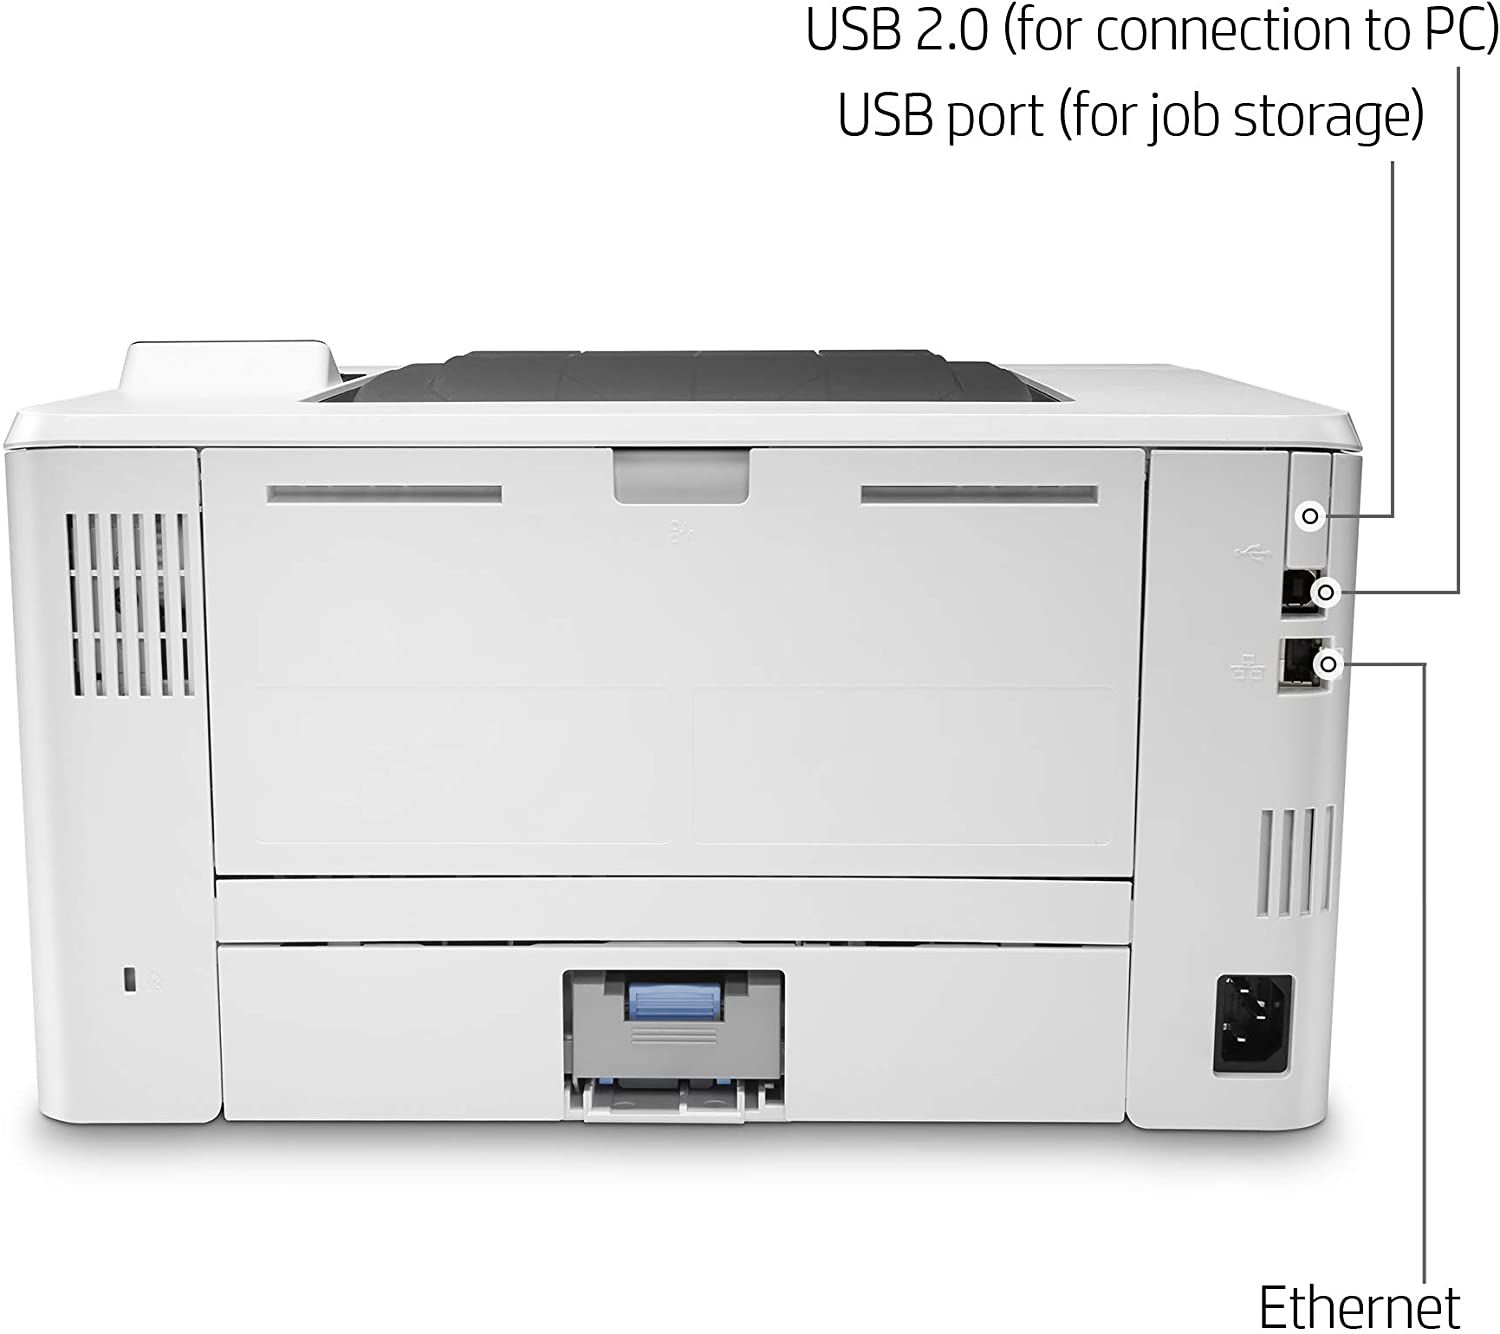  Cho Thuê Máy In HP LaserJet Pro M404dn - A4 